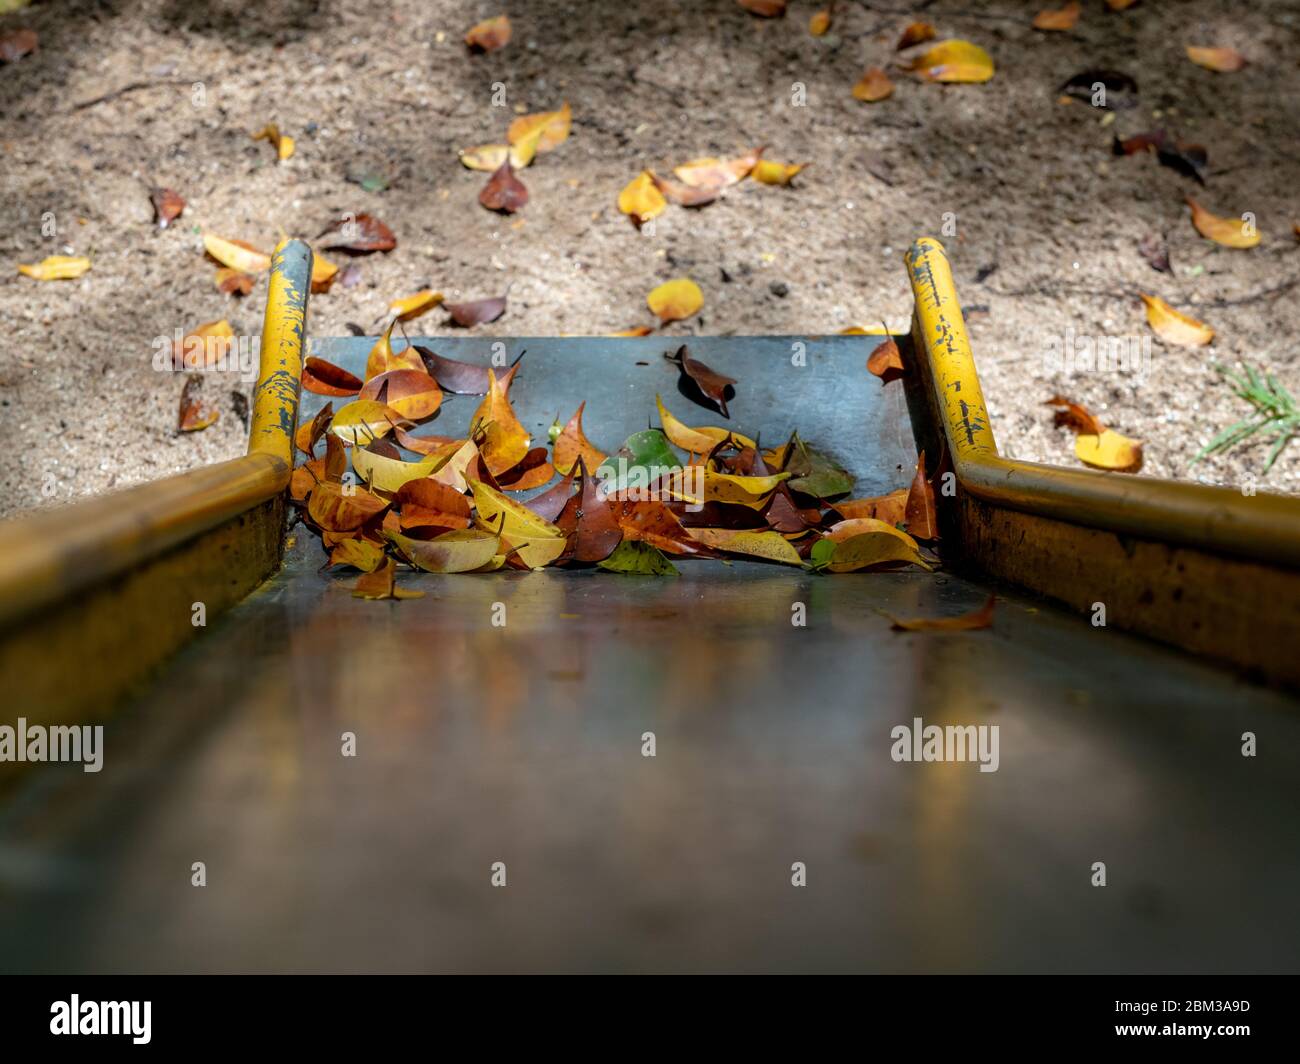 Trockene Blätter an der Basis einer Metallrutsche auf einem Spielplatz, Areal, Rio de Janeiro, Brasilien Stockfoto